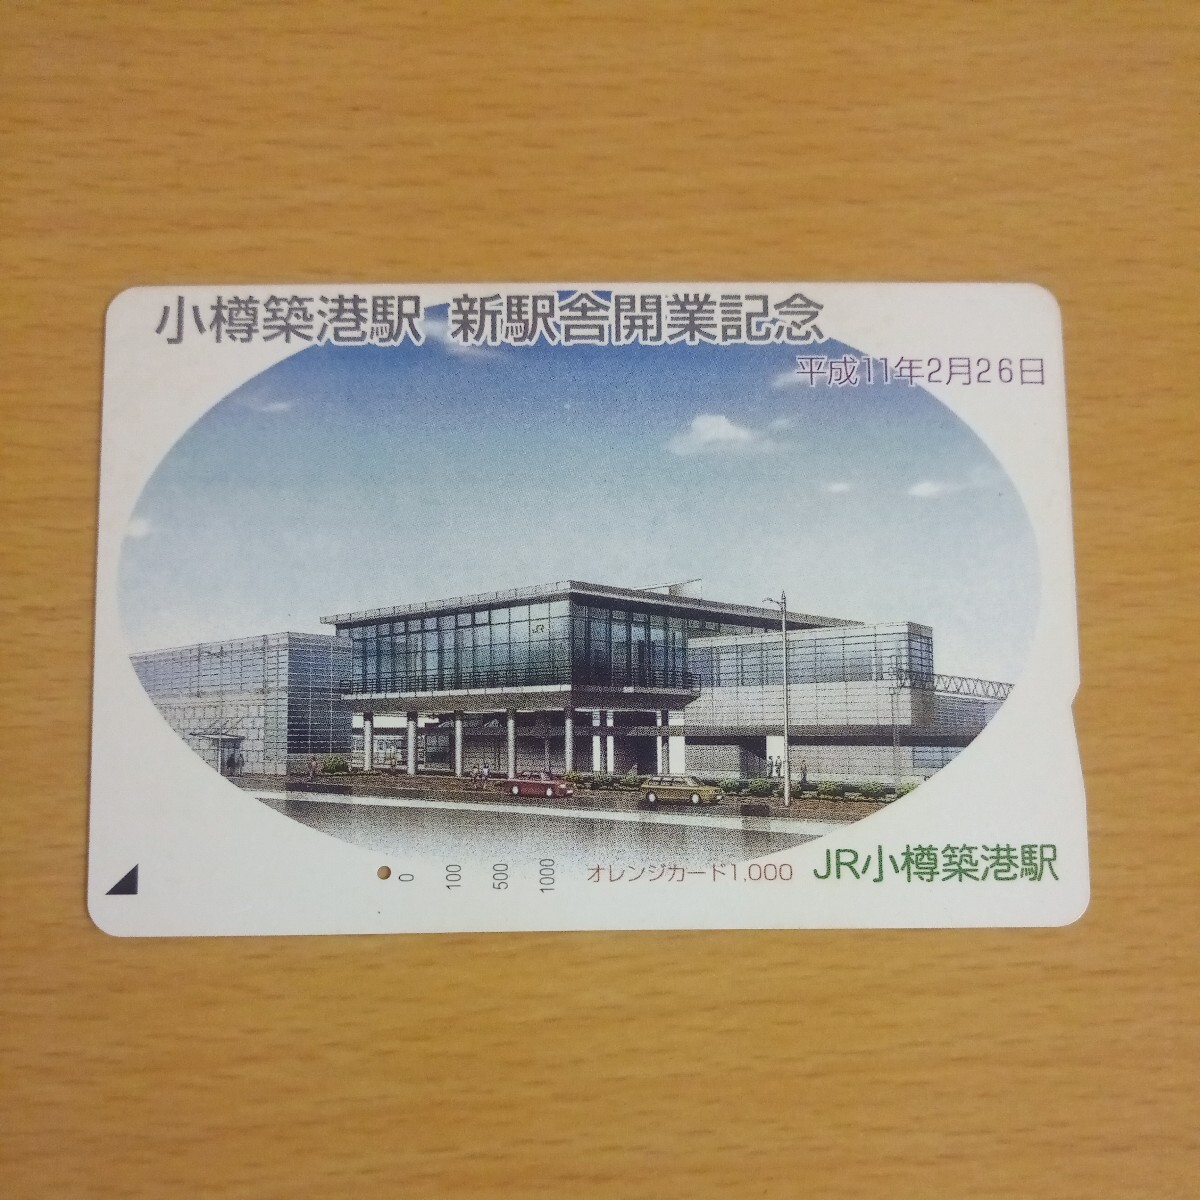 【1穴】使用済みオレンジカード JR北海道 小樽築港駅 新駅舎開業記念 9902の画像1